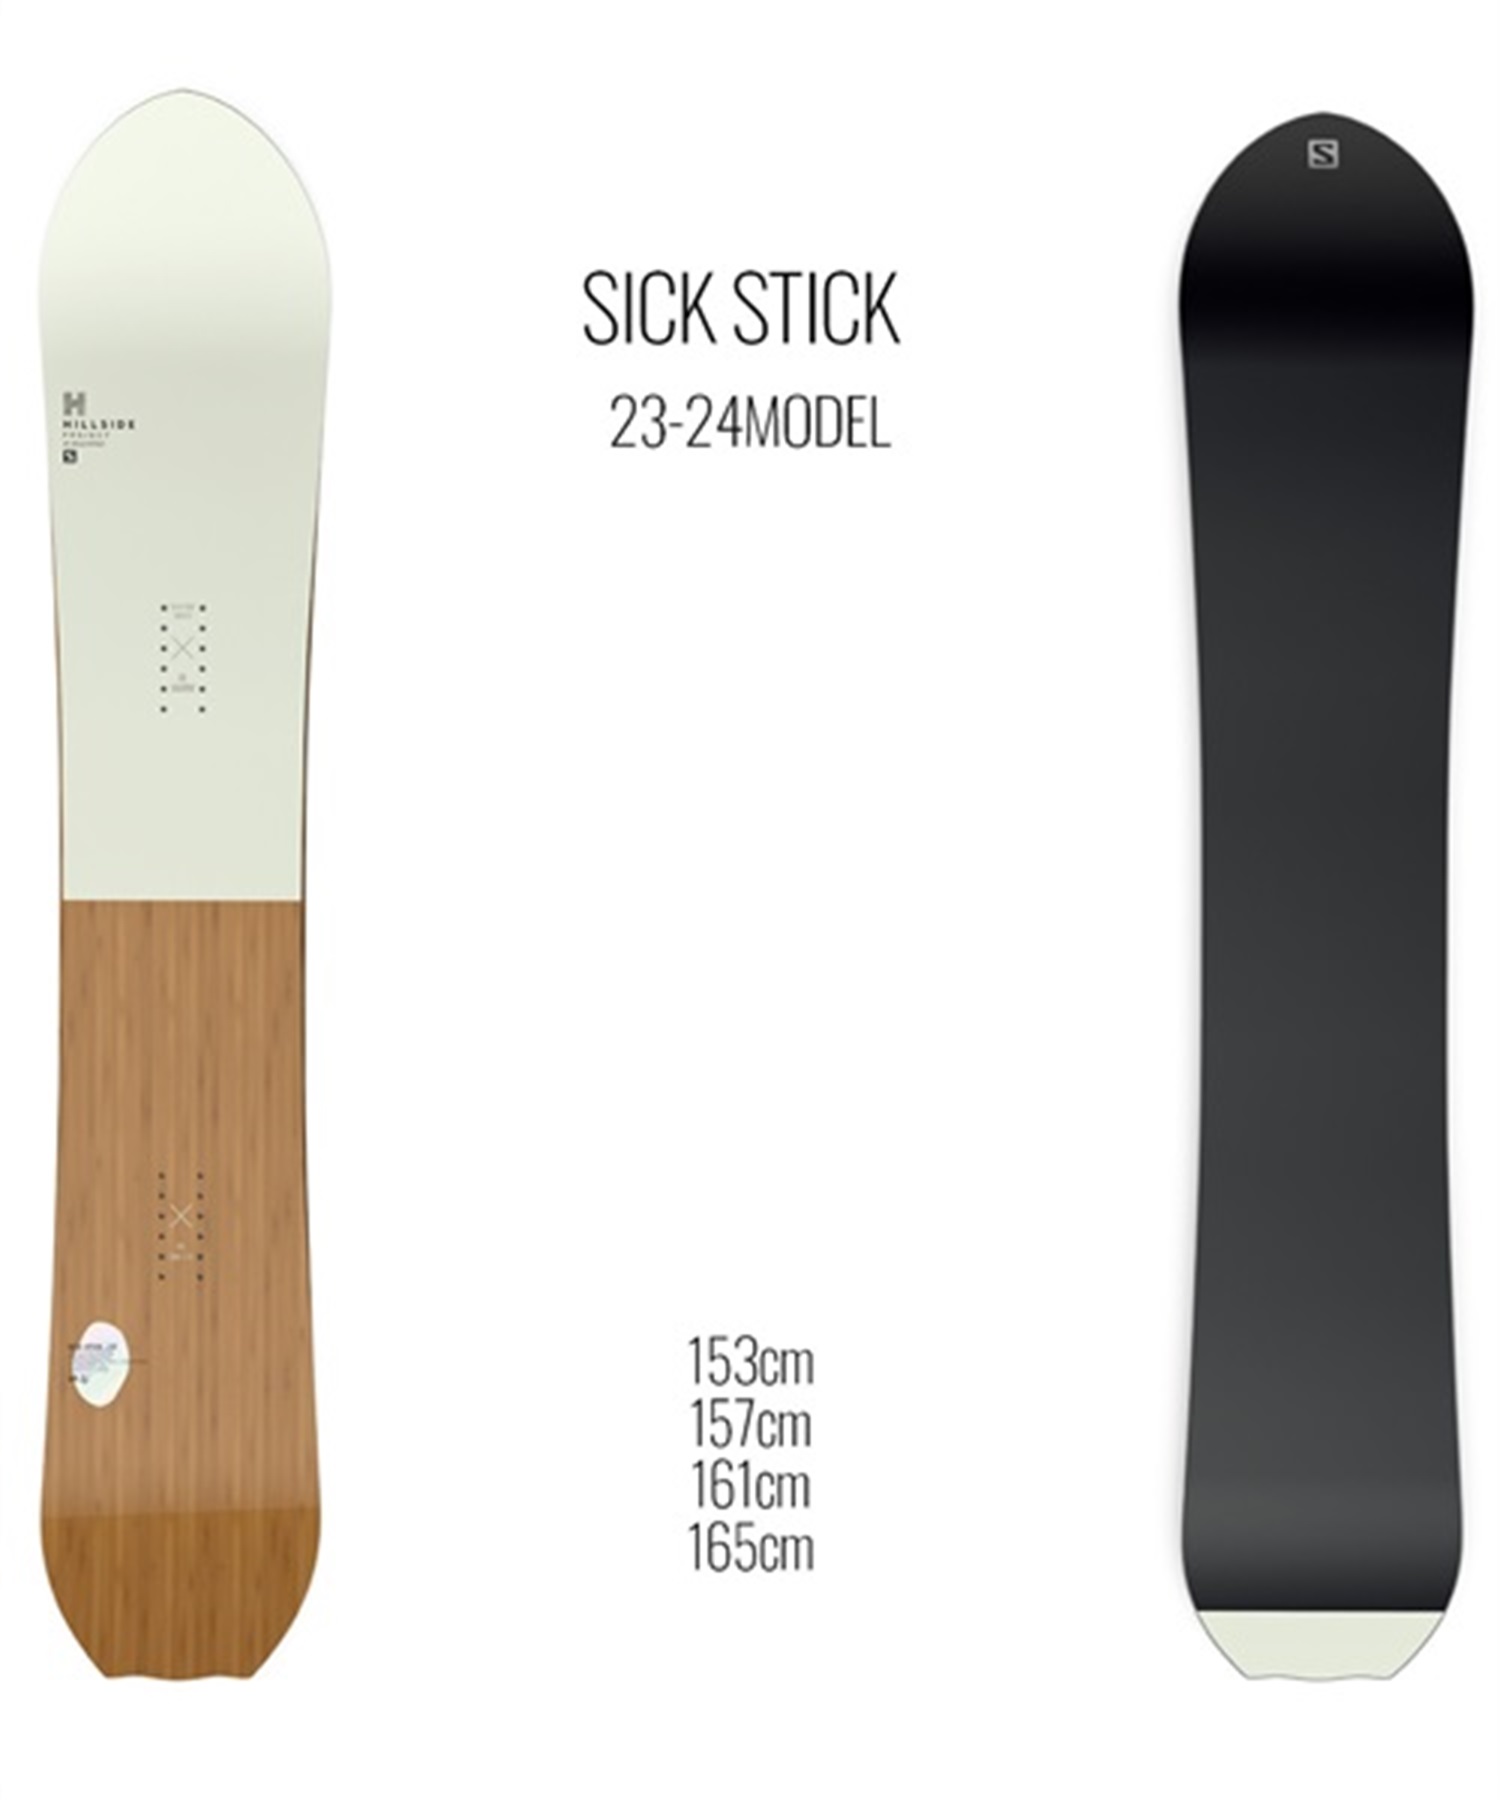 スノーボード 板 メンズ SALOMON サロモン SICK STICK 23-24モデル ムラサキスポーツ KK C2(SICKSTICK-153cm)